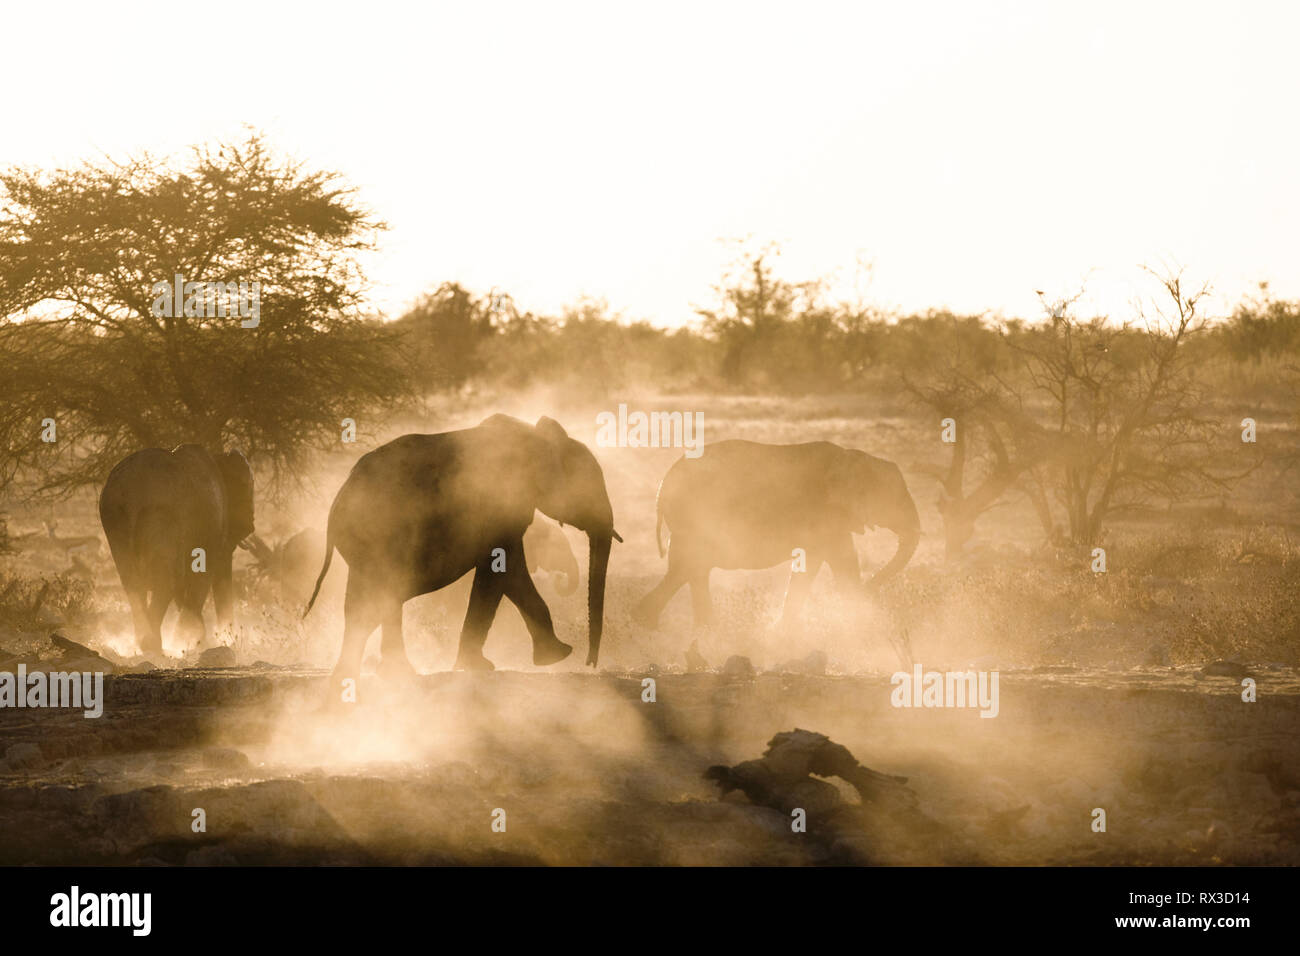 Staub ist gelb mit der untergehenden Sonne gedreht und zeigt die Silhouette eines Elefanten. Stockfoto